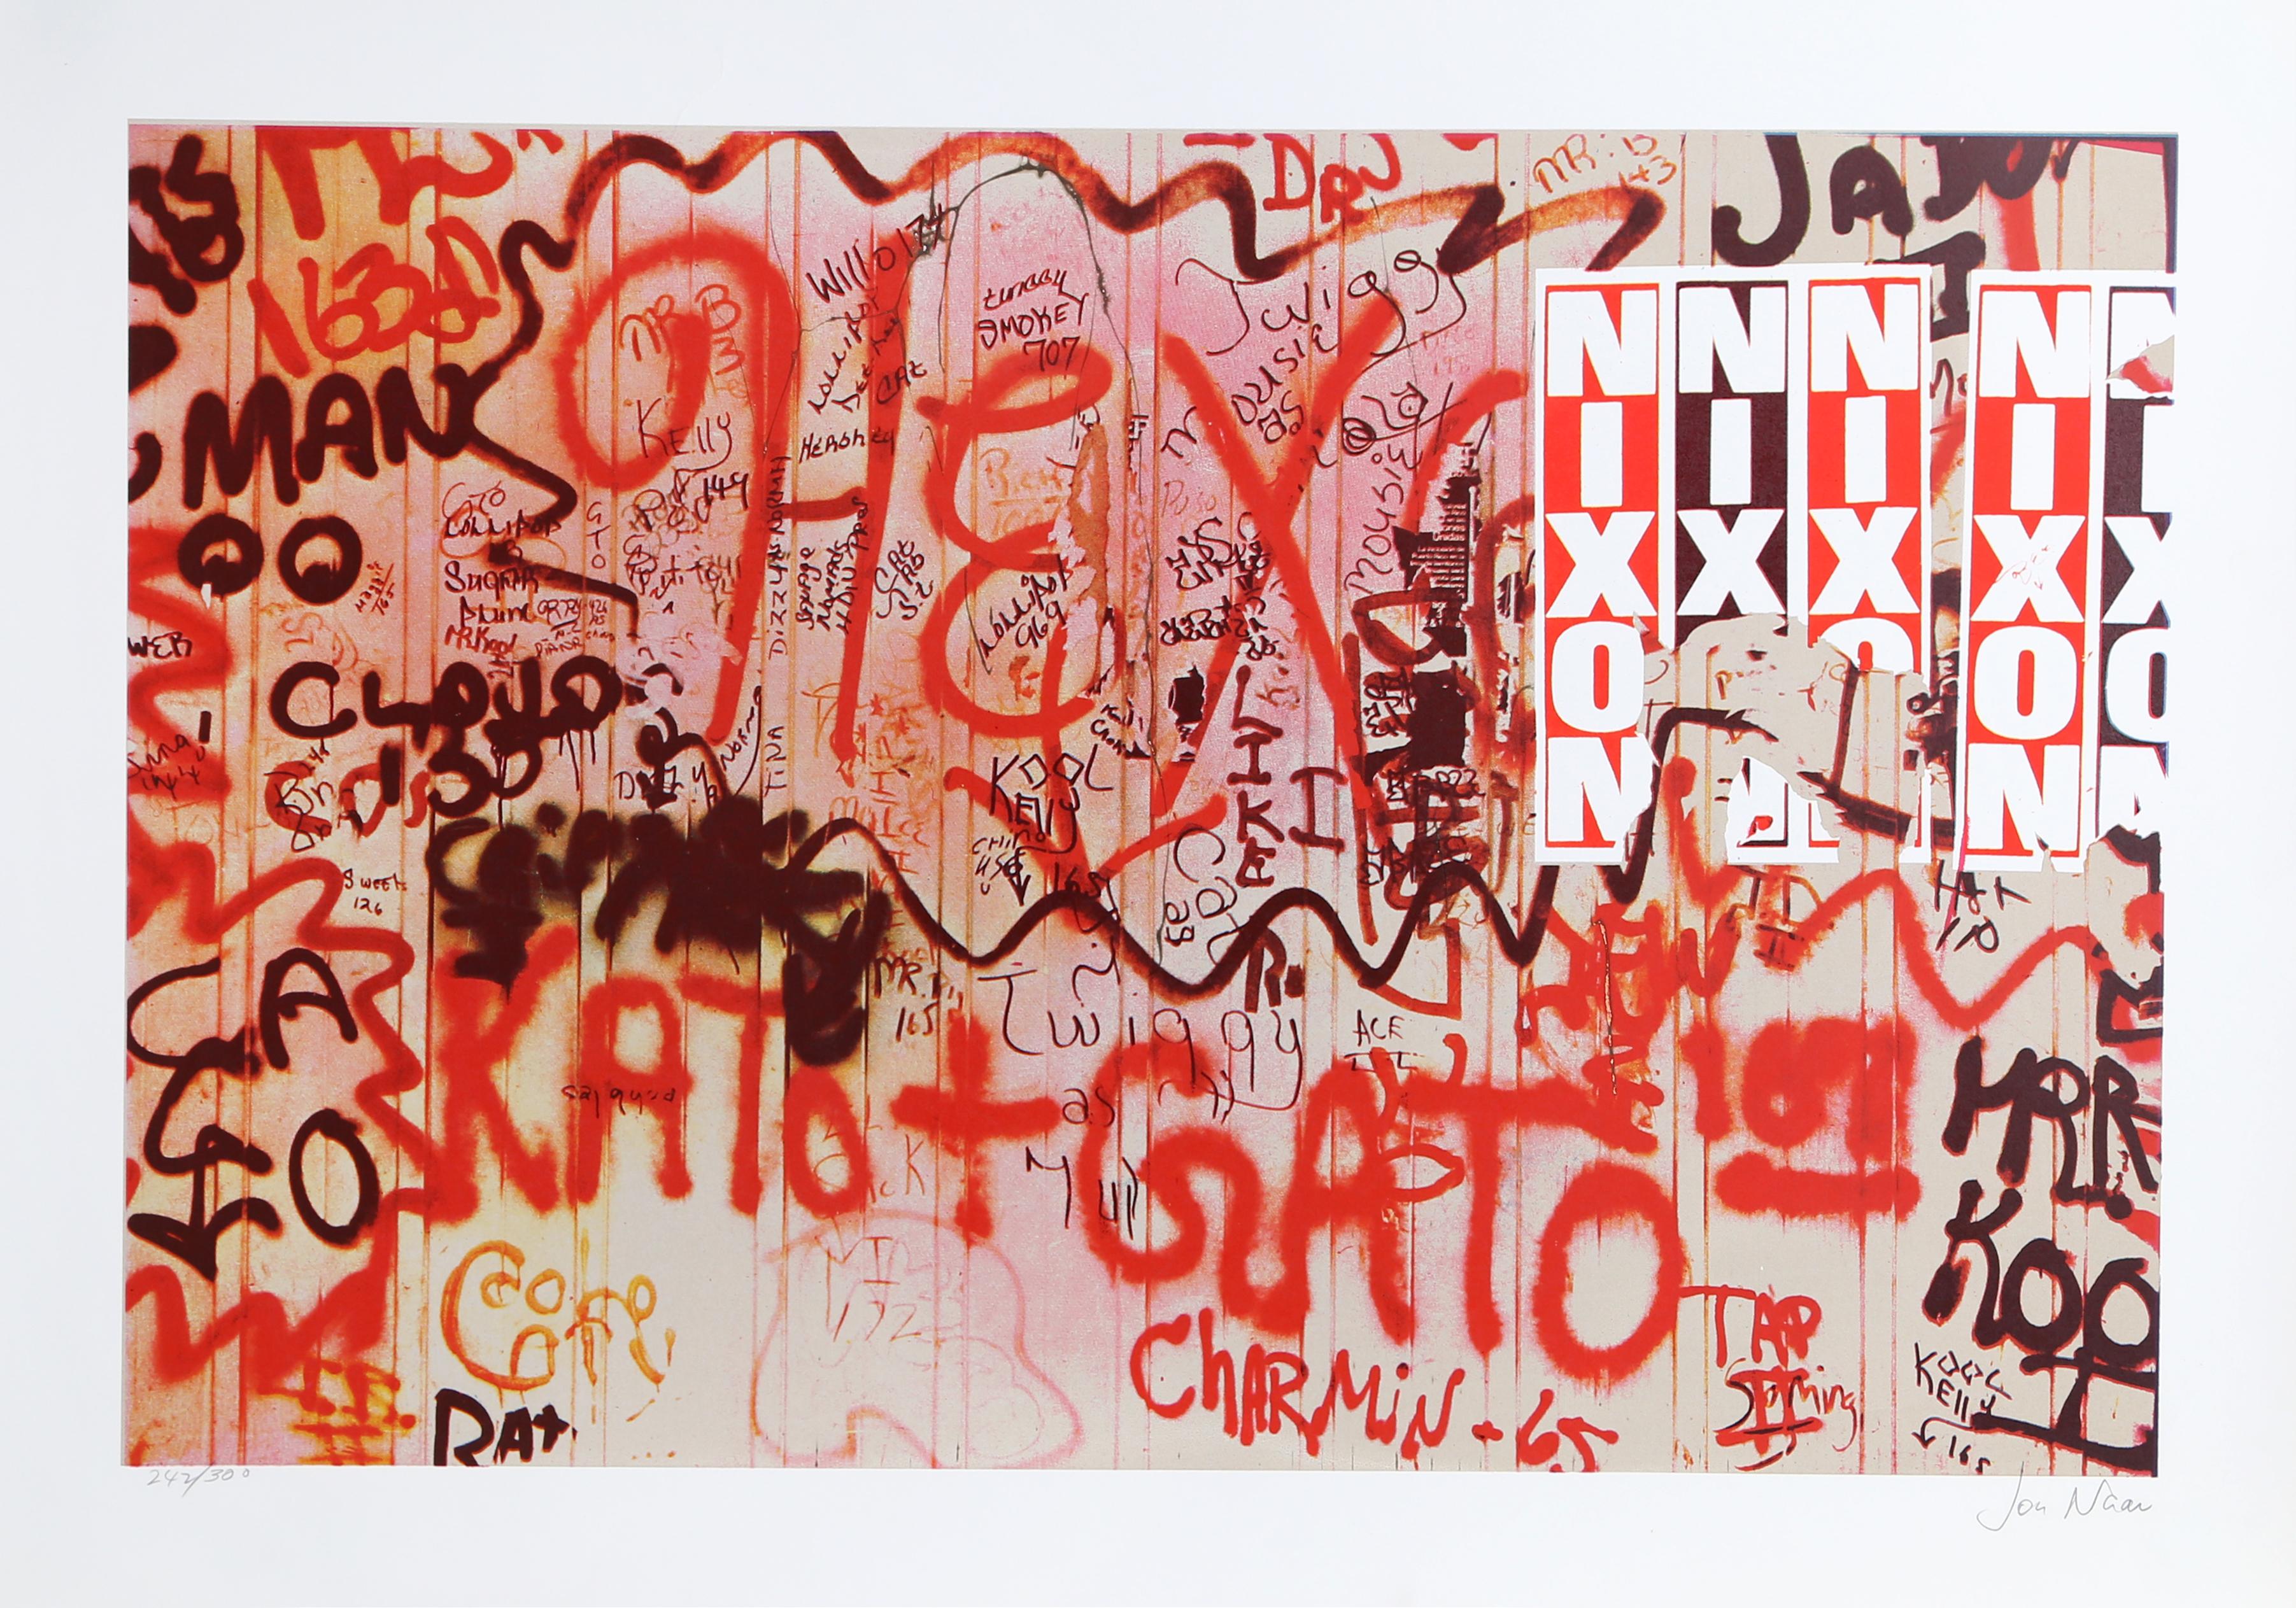 Künstler: Jon Naar
Titel: Nixon von Faith of Graffiti
Jahr: 1974
Medium: Serigraphie, signiert und nummeriert mit Bleistift
Auflage: 300
Größe: 24,5 x 34 Zoll

Gedruckt bei Circle Press, Chicago
Veröffentlicht von Documentary Photos NYC Graffiti